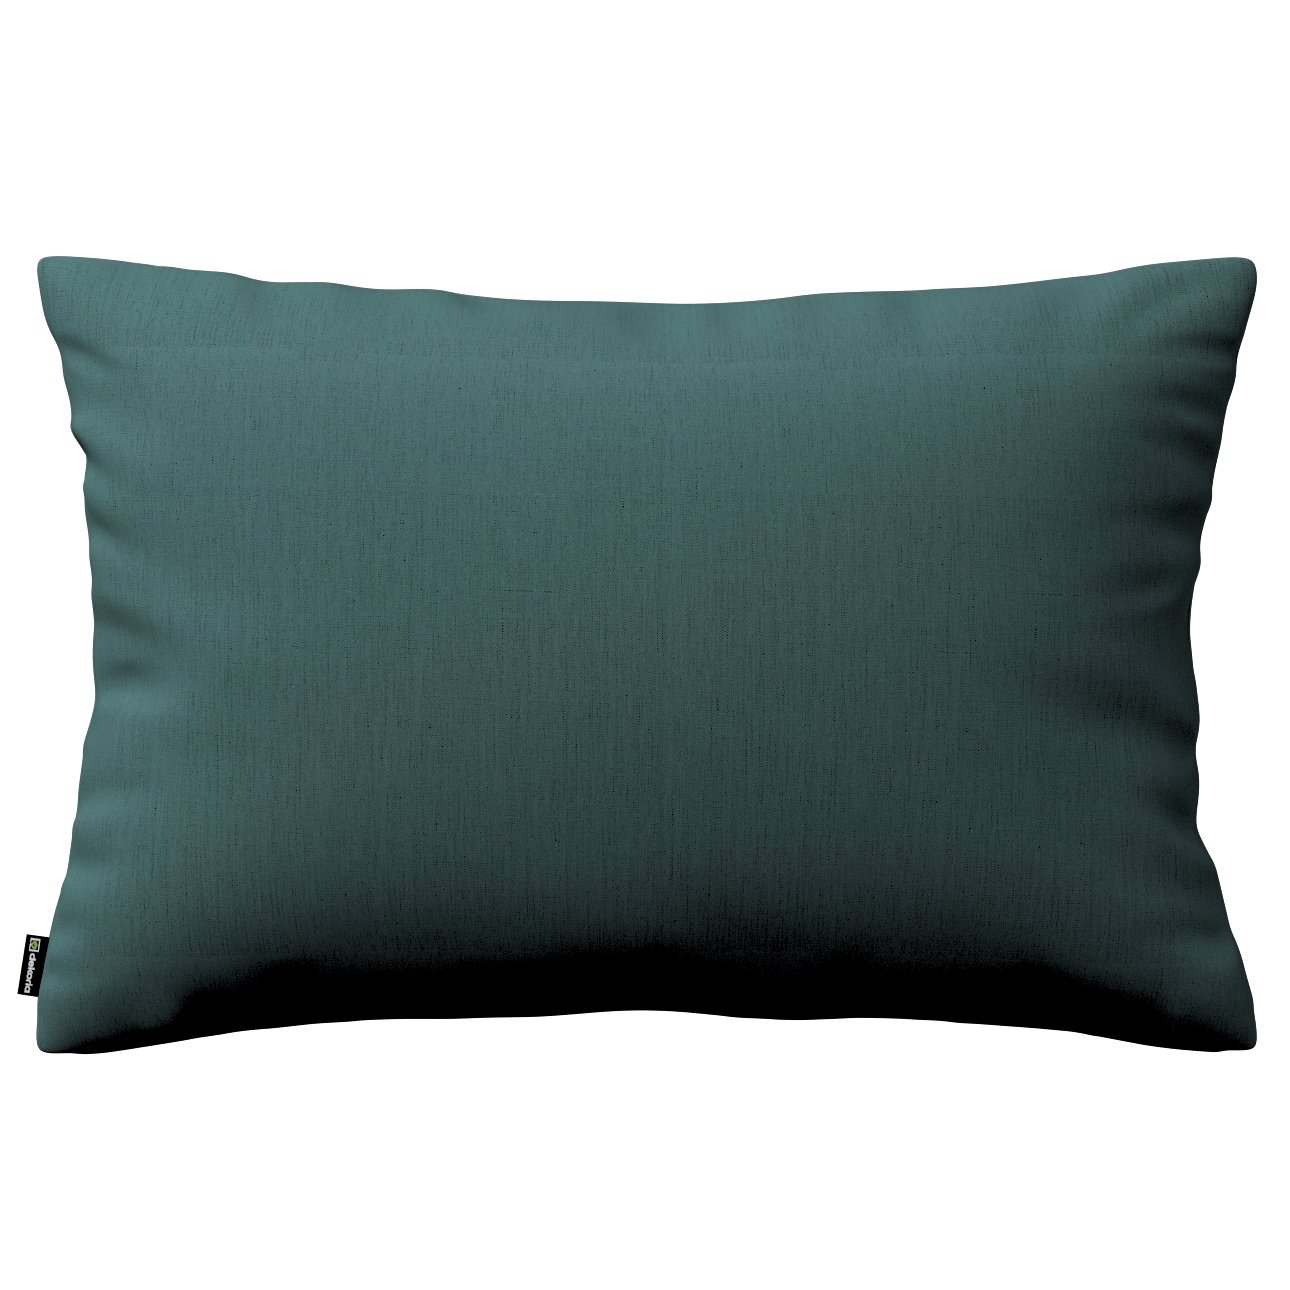 Dekoria Karin - jednoduchá obliečka, 60x40cm, matná smaragdová zelená, 60 x 40 cm, Linen, 159-09